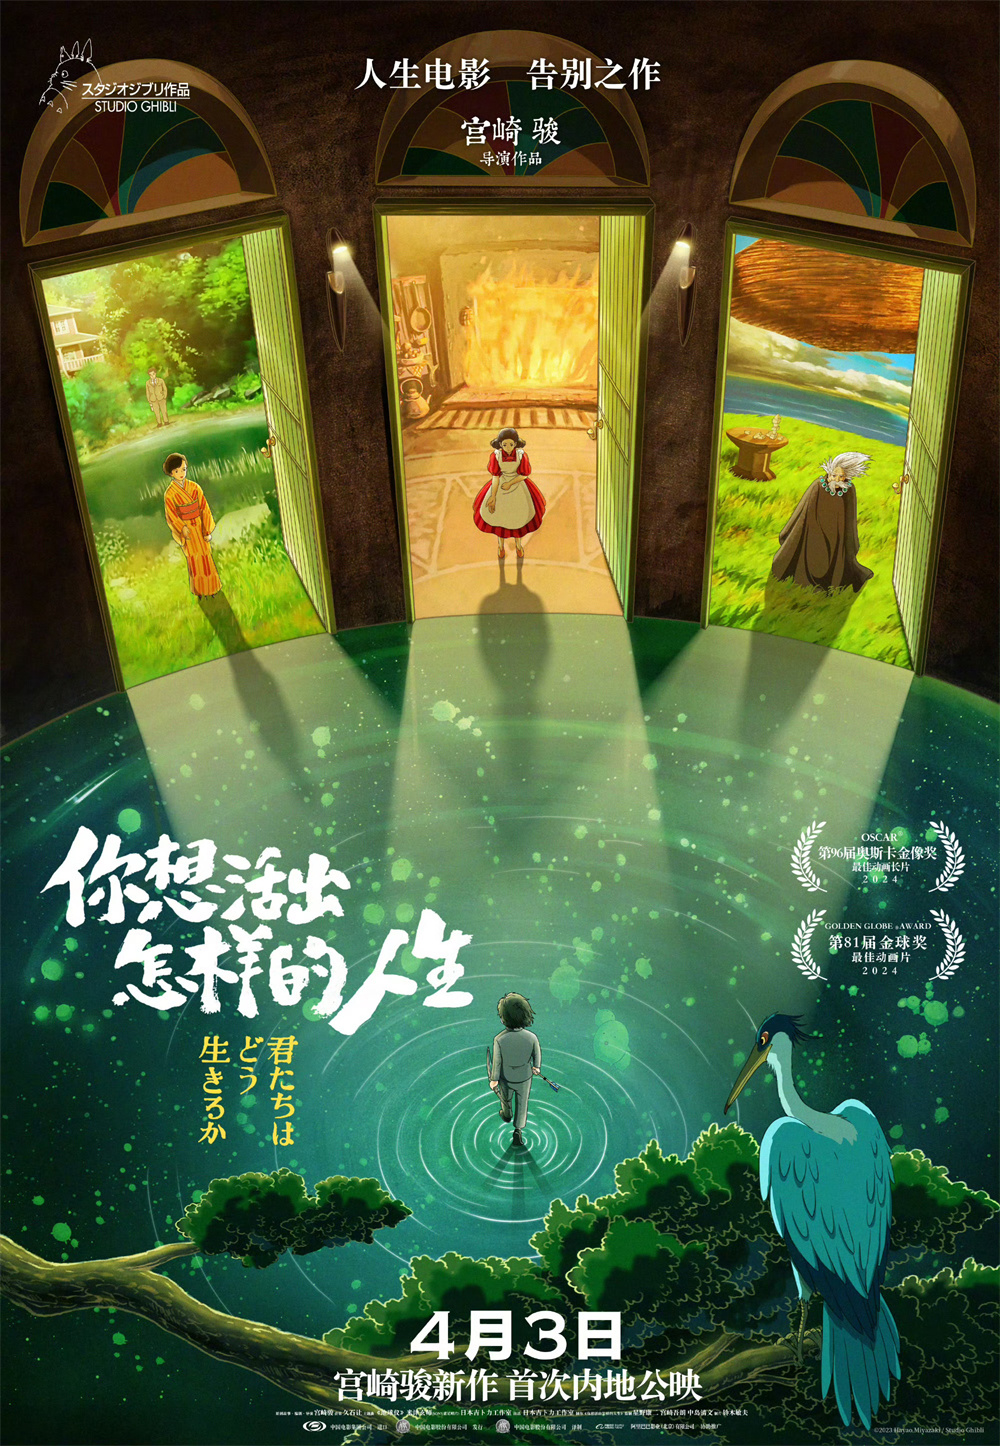 宫崎骏《你想活出怎样的人生》定档4月3日上映2